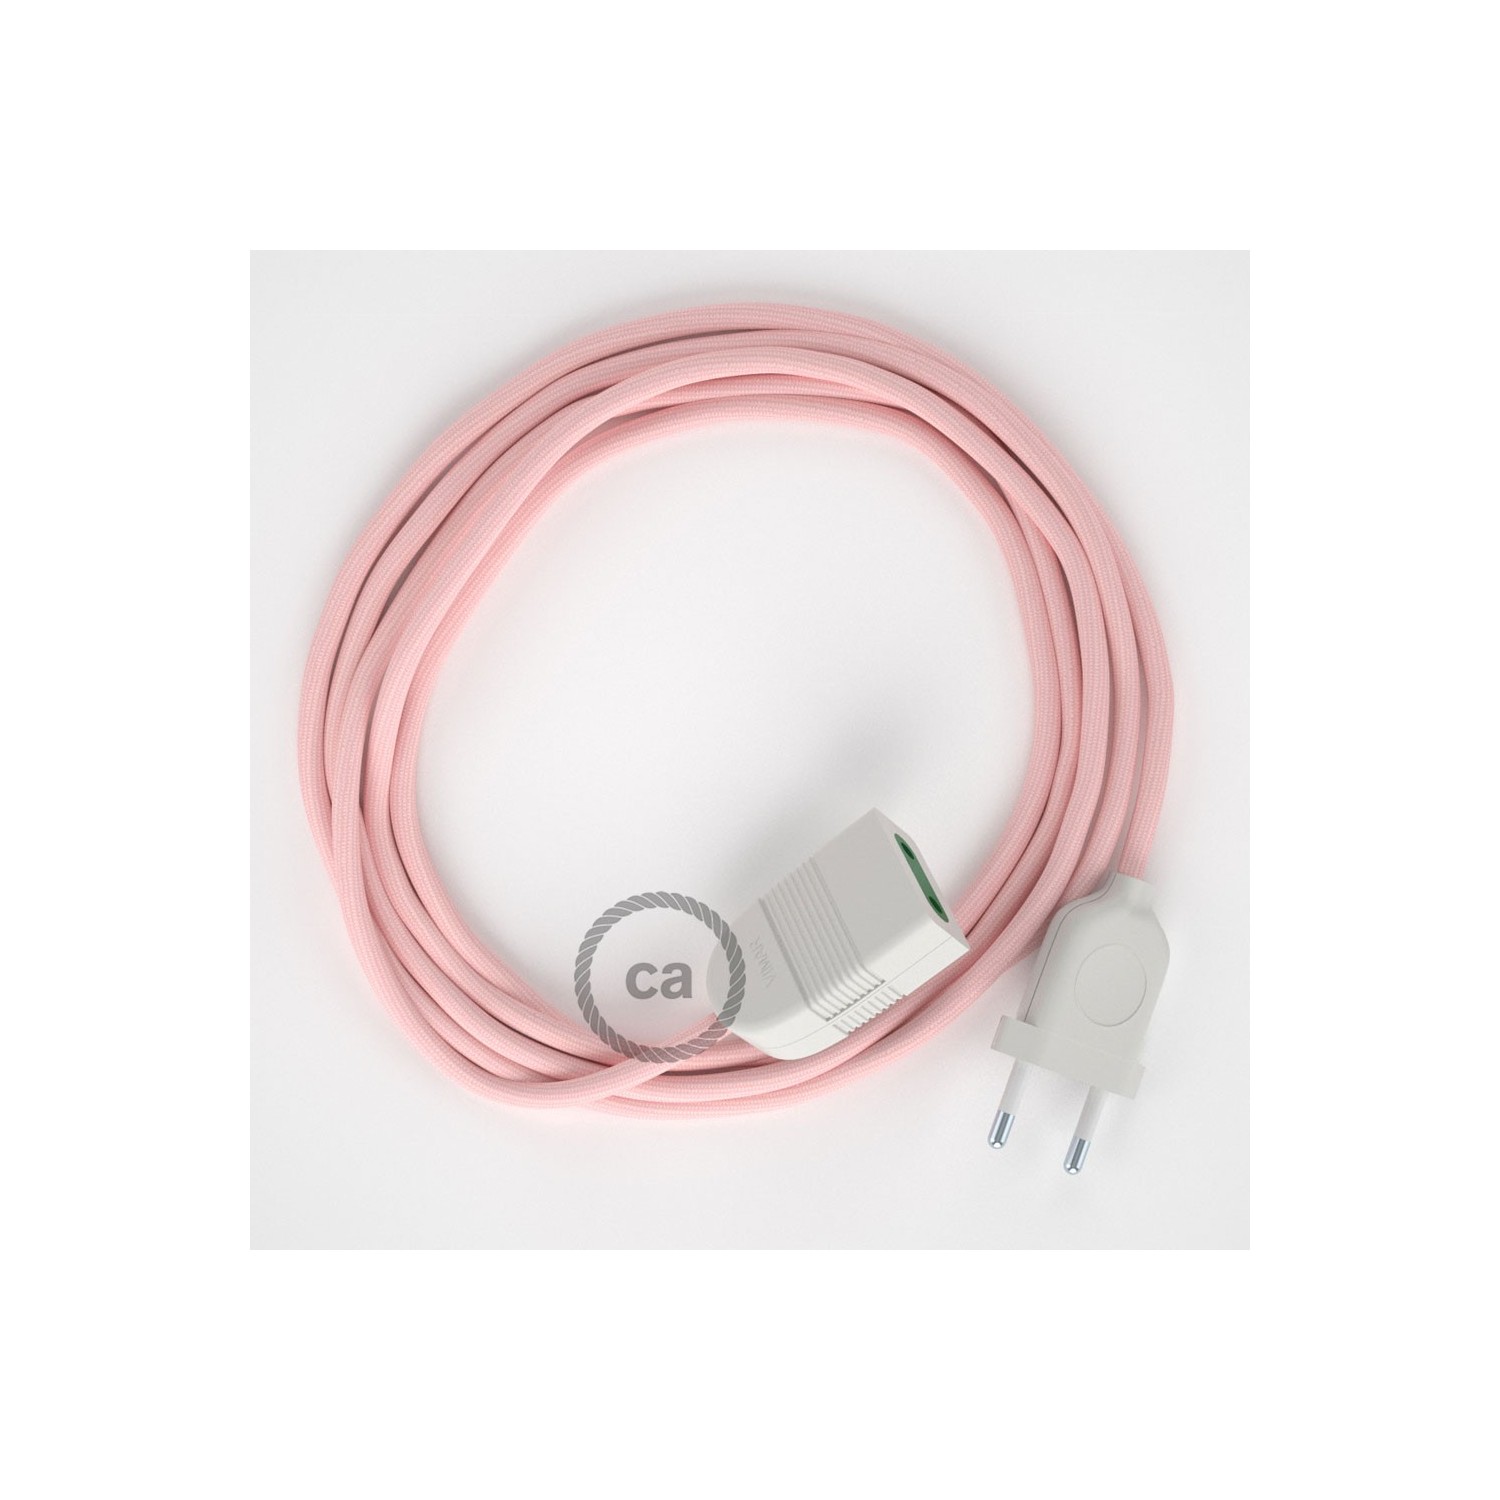 Rallonge électrique avec câble textile RM16 Effet Soie Rose Baby 2P 10A Made in Italy.